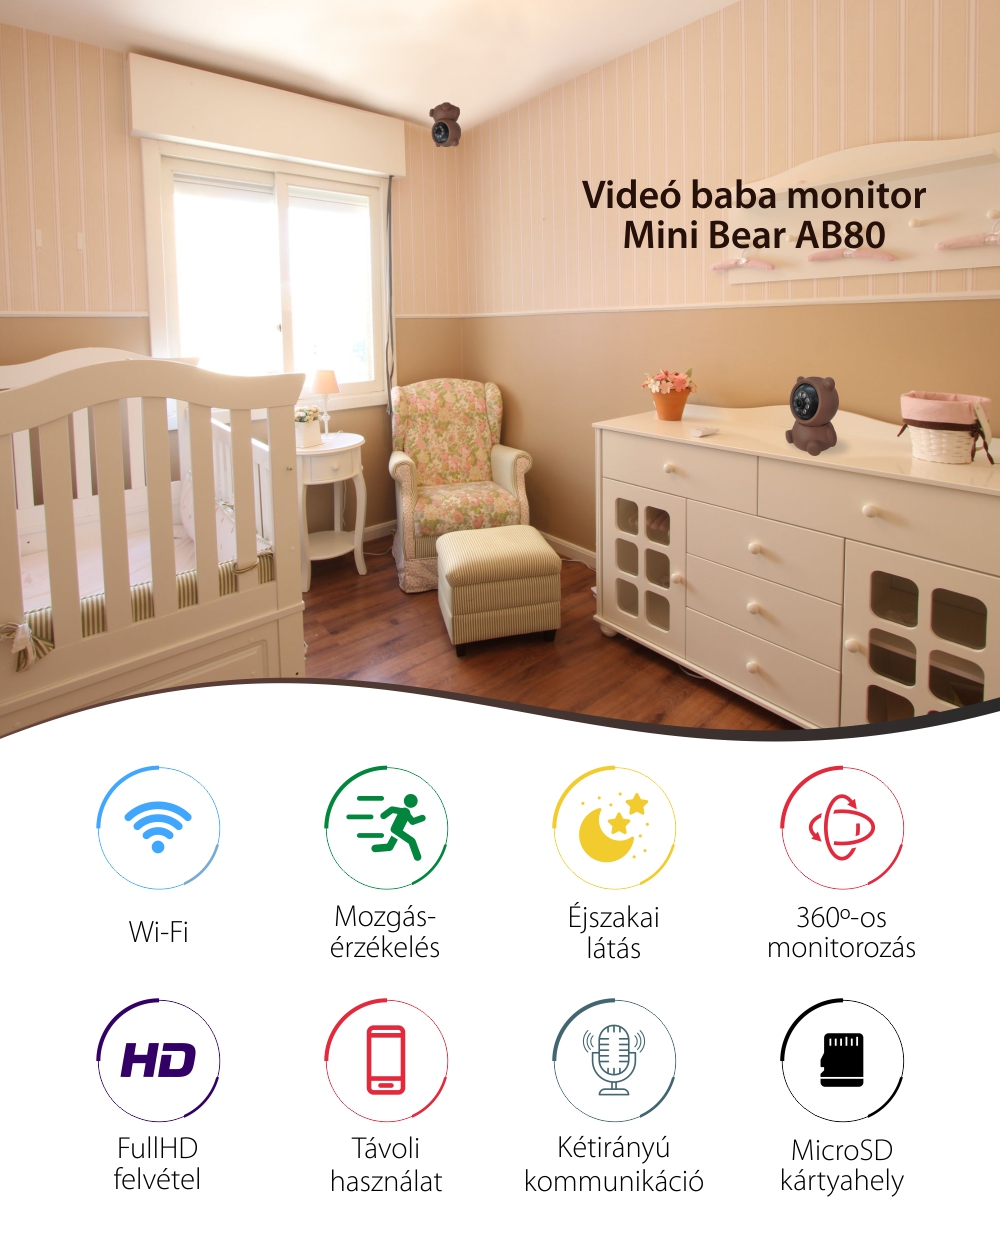 Bébiőr Video AB80 Wi-Fi-vel, Mozgásérzékelés, Éjszakai látás, Full HD felvétel, 360 fokos monitorozás, MicroSD foglalat, Barna